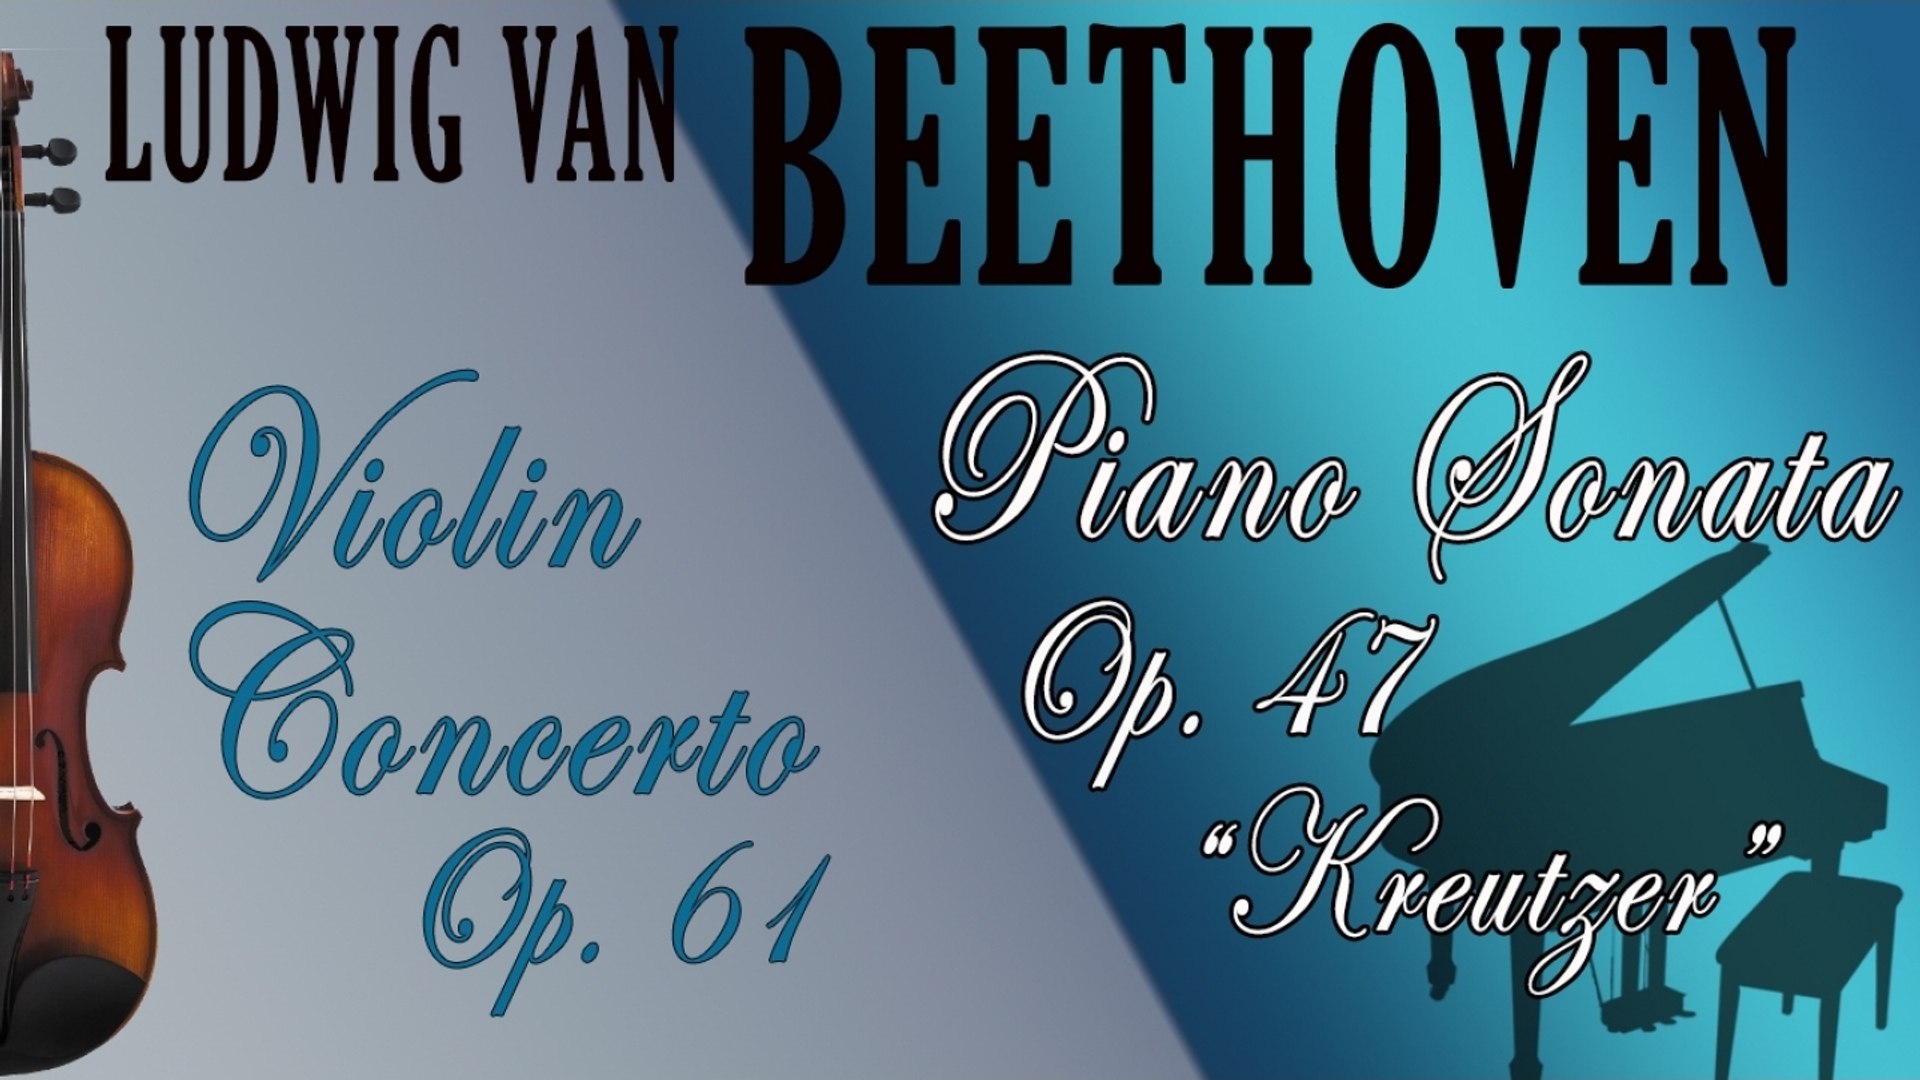 BEETHOVEN - BEETHOVEN: VIOLIN CONCERTO, OP. 61  PIANO SONATA, OP. 47  